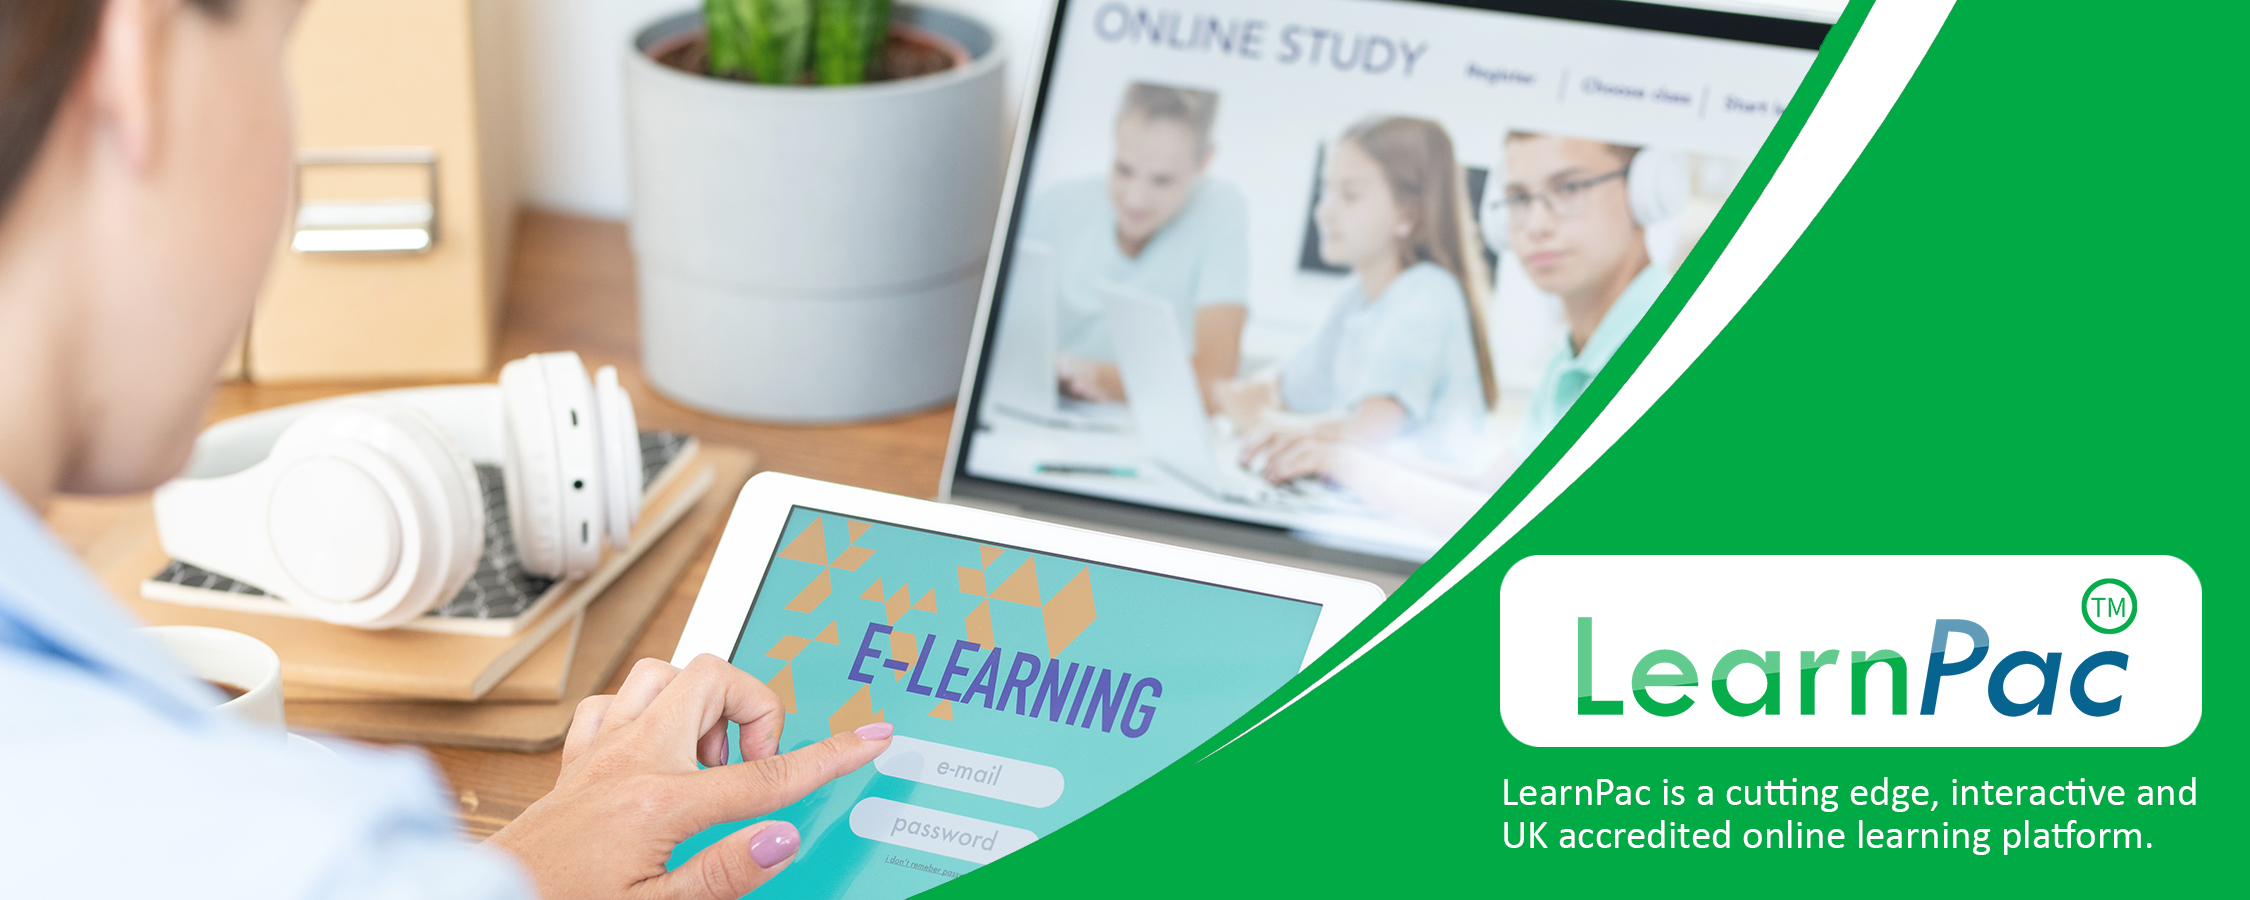 Millennial Onboarding Training - Online Learning Courses - E-Learning Courses - LearnPac Systems UK -